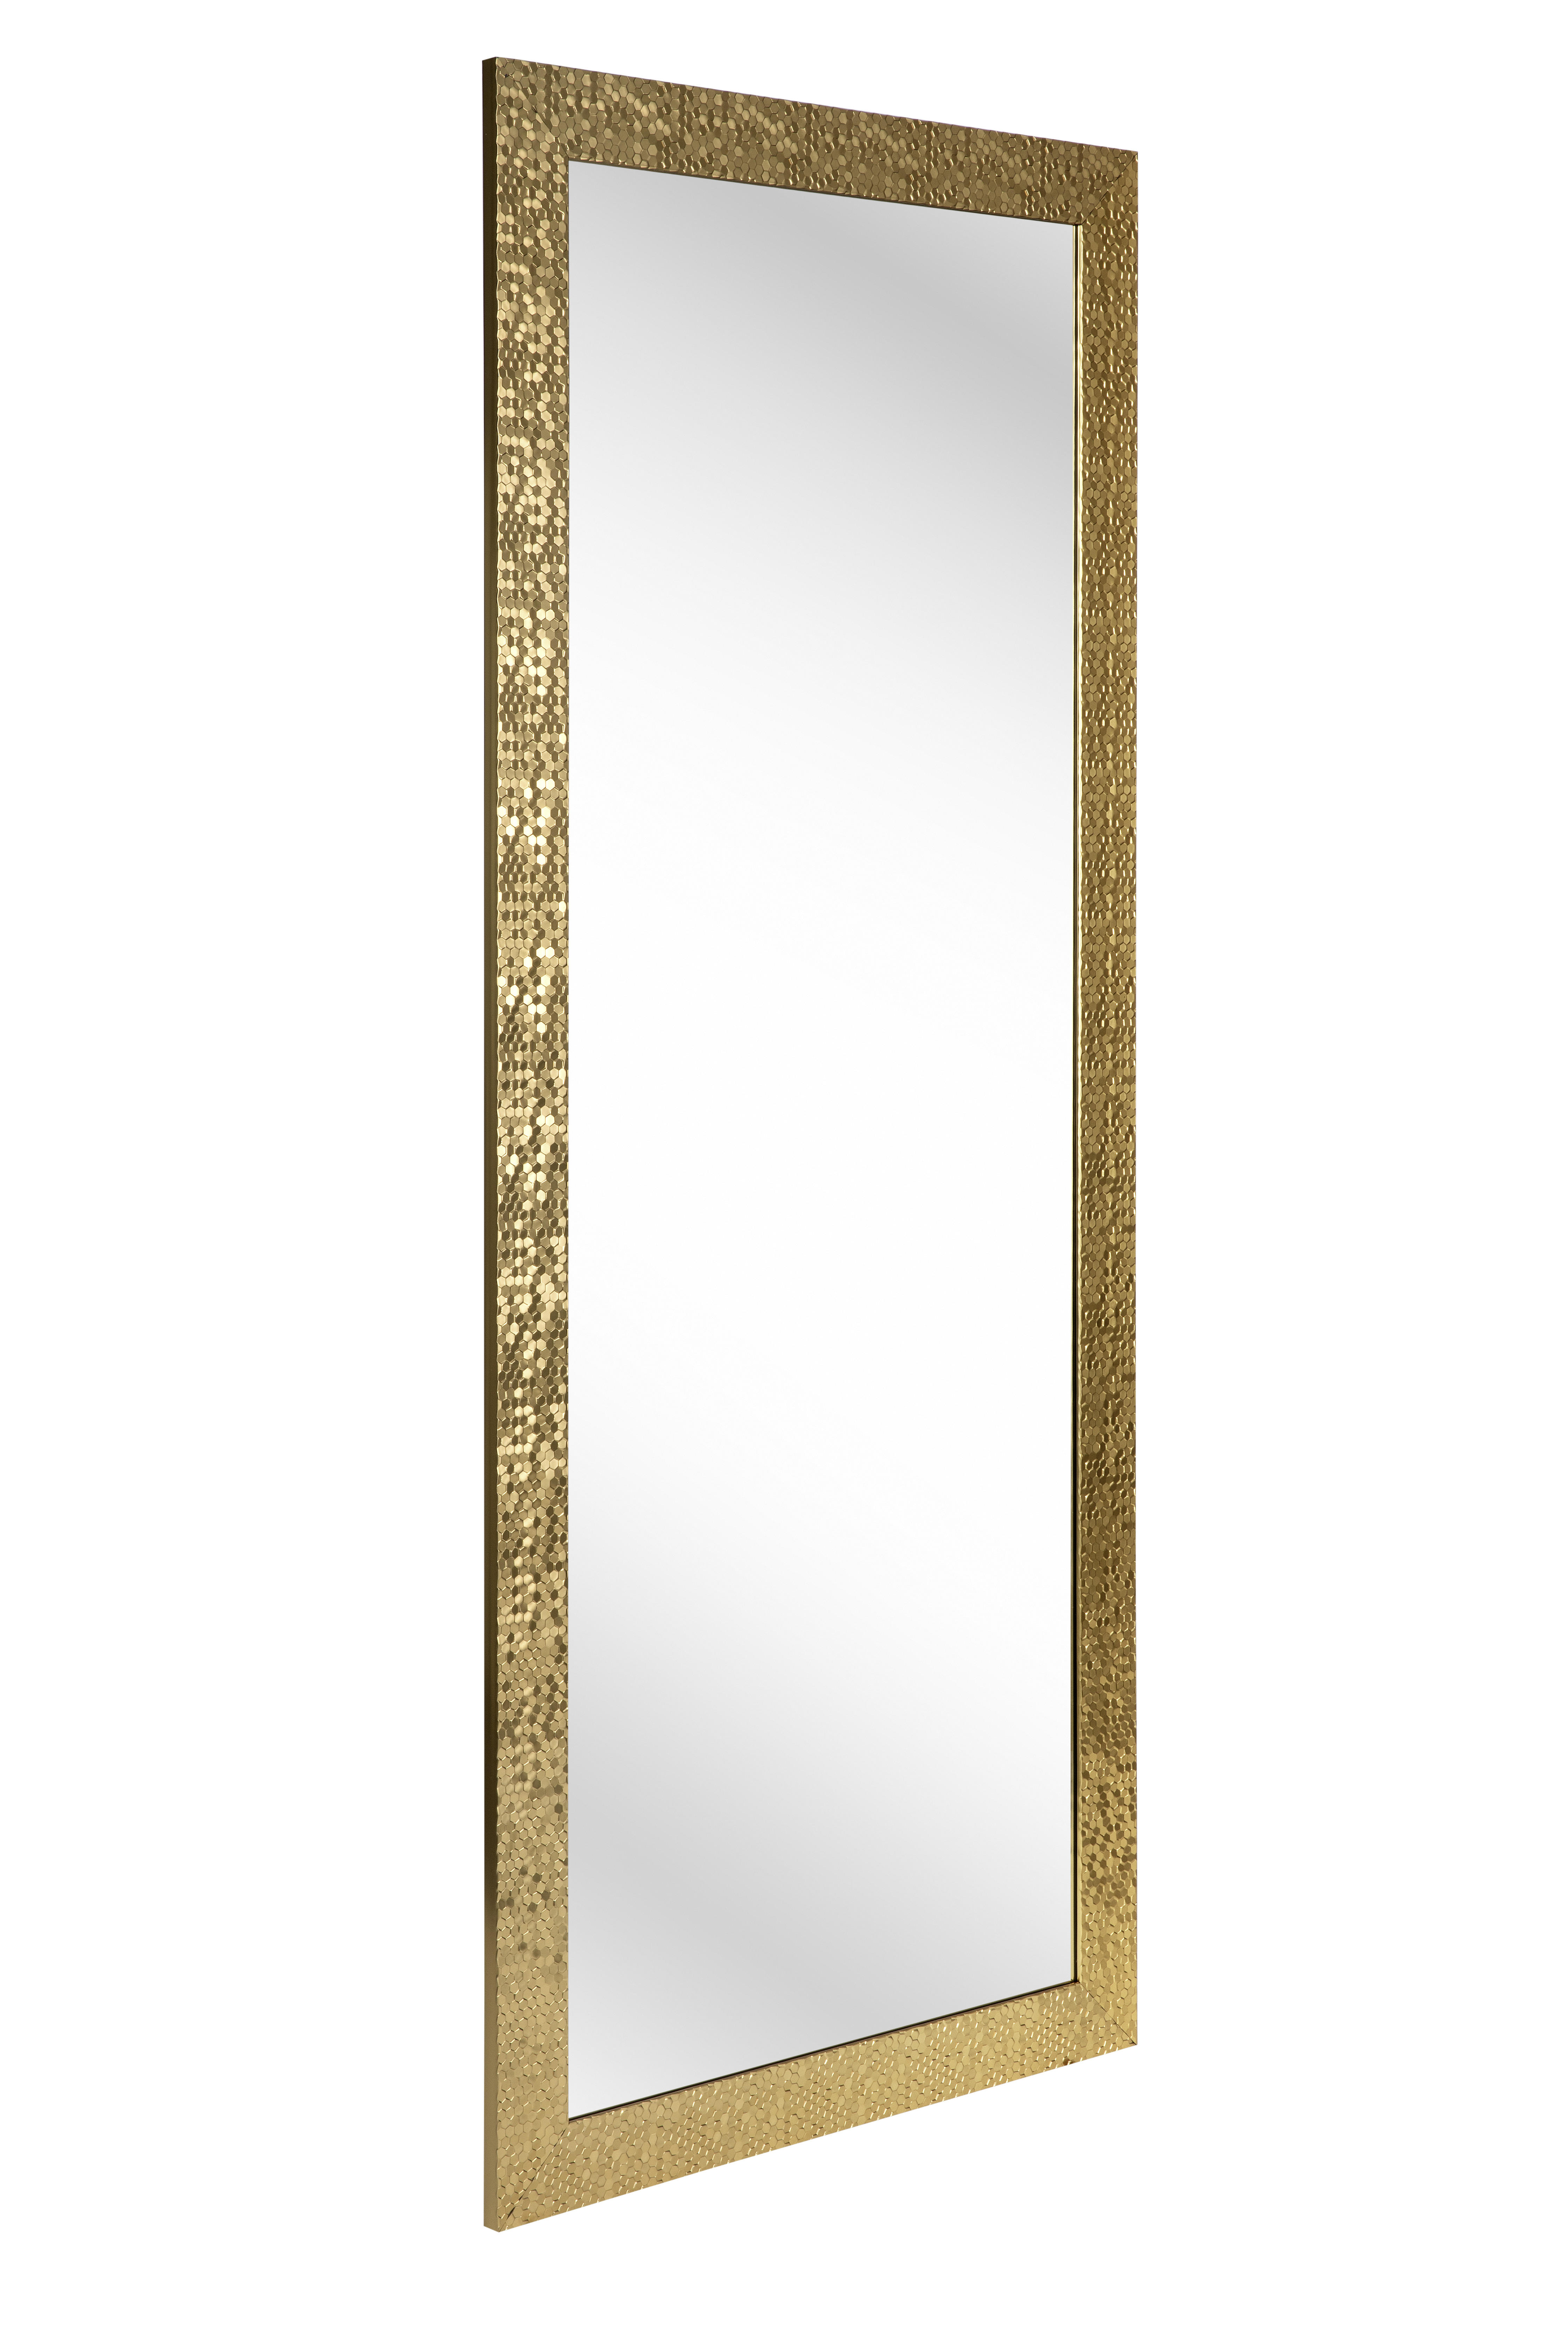 WANDSPIEGEL 70/170/2 cm  - Goldfarben, Lifestyle, Glas/Kunststoff (70/170/2cm) - Carryhome